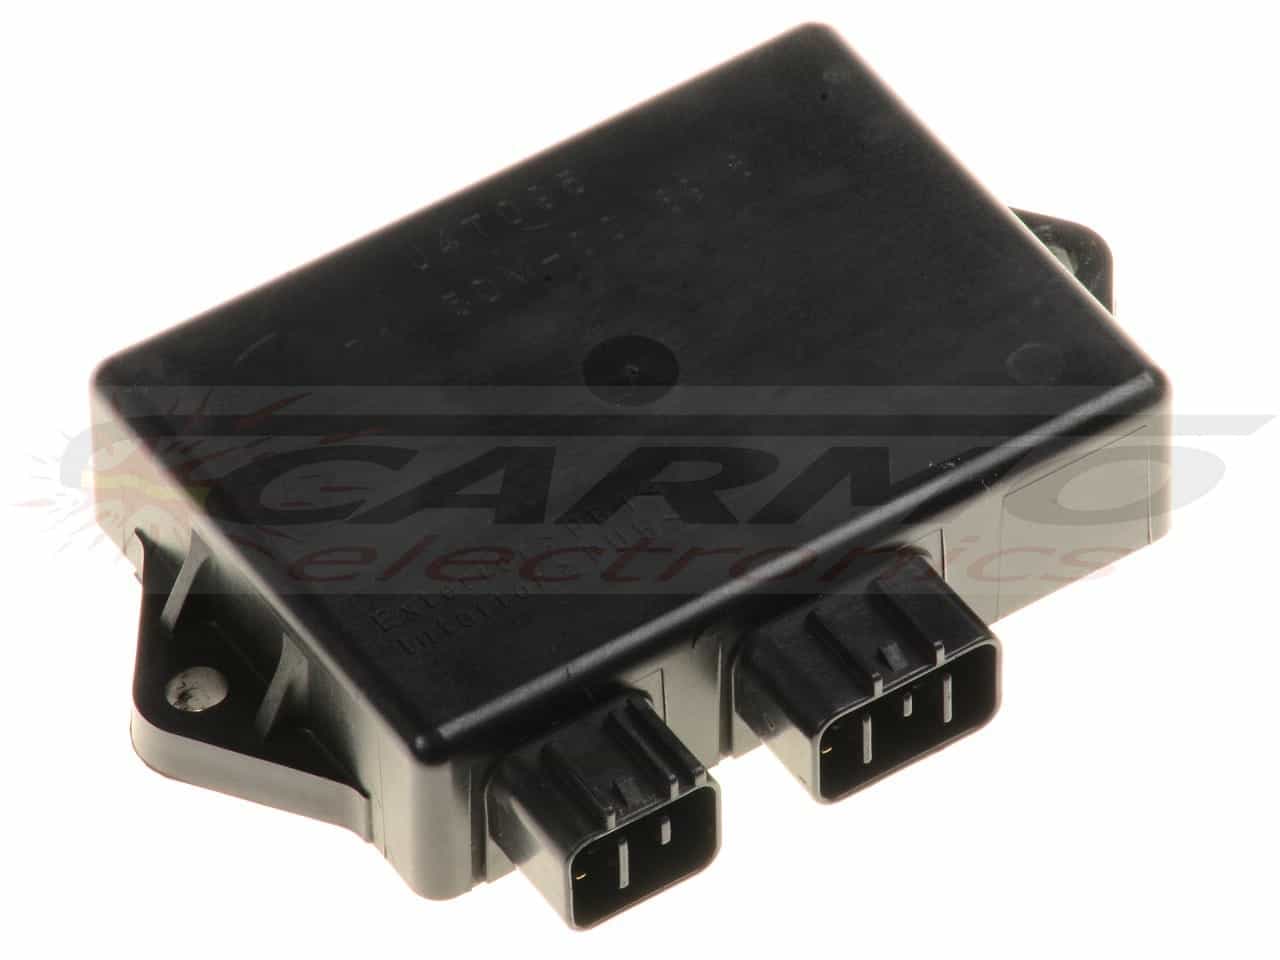 FZR600 YZF600 TCI CDI dispositif de commande boîte noire (J4T045, 70 4JH-00; J4T046, 71 4JH-10)